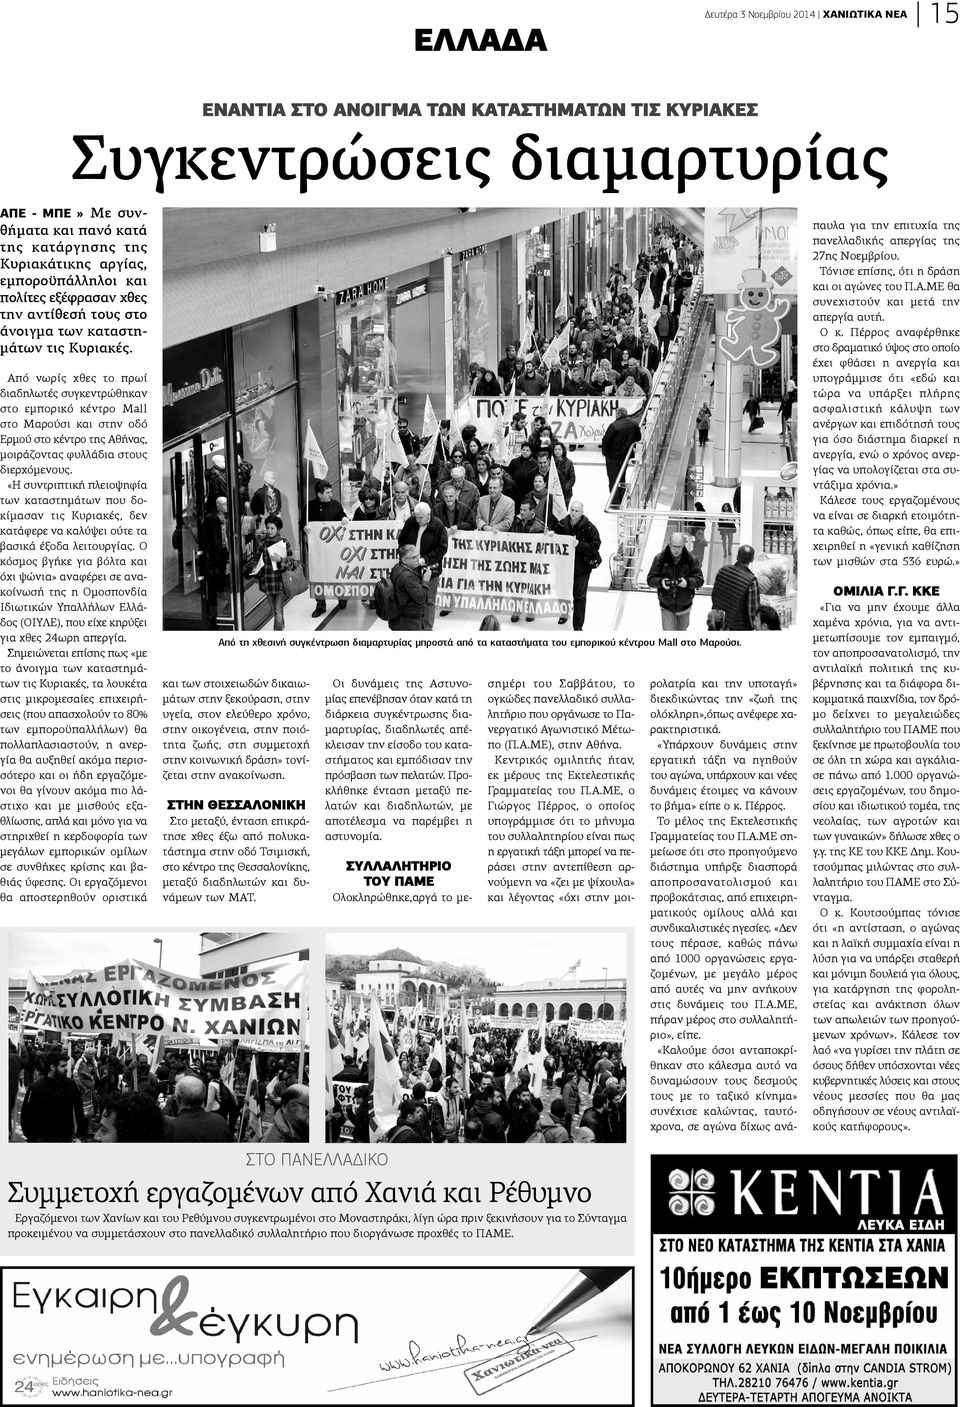 Από νωρίς χθες το πρωί ιαδηλωτές συγκεντρώθηκαν το εμπορικό κέντρο Mall το Μαρούσι και στην οδό ρμού στο κέντρο της Αθήνας, οιράζοντας φυλλάδια στους ιερχόμενους.